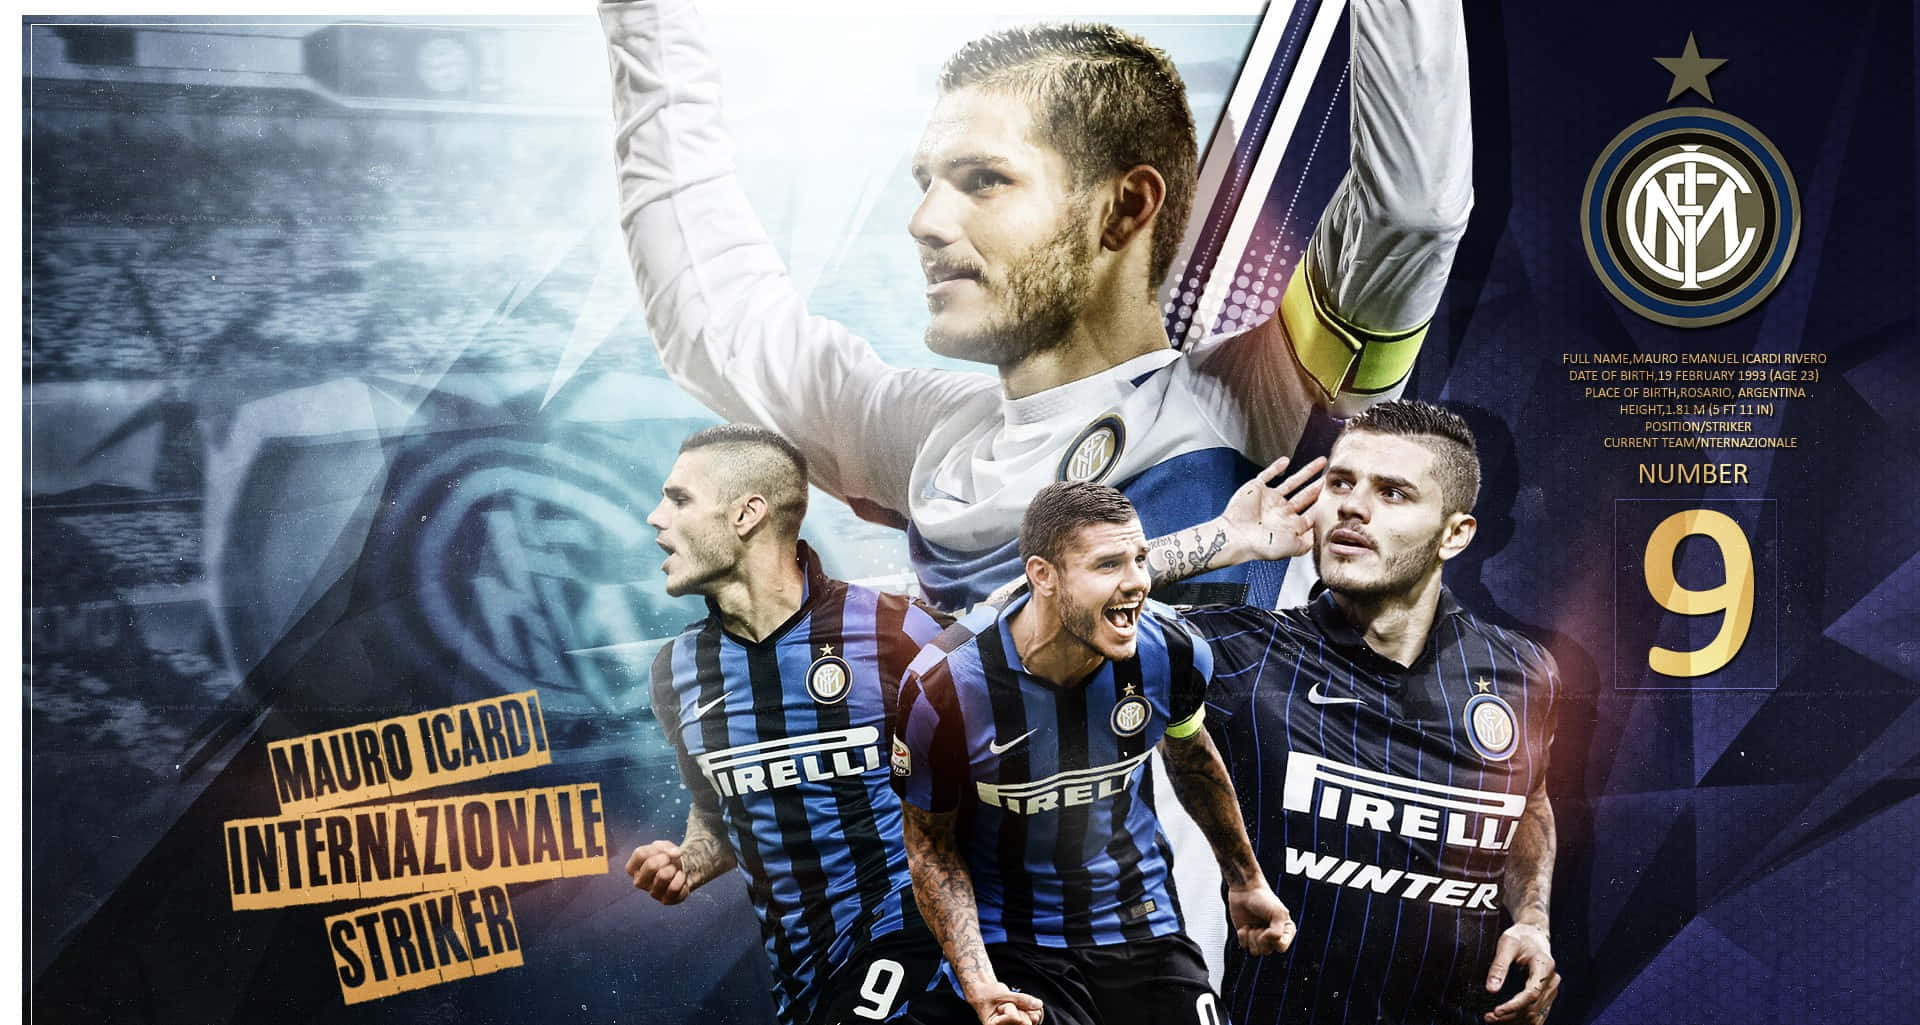 Mauro Icardi Inter Milan Striker Collage Wallpaper